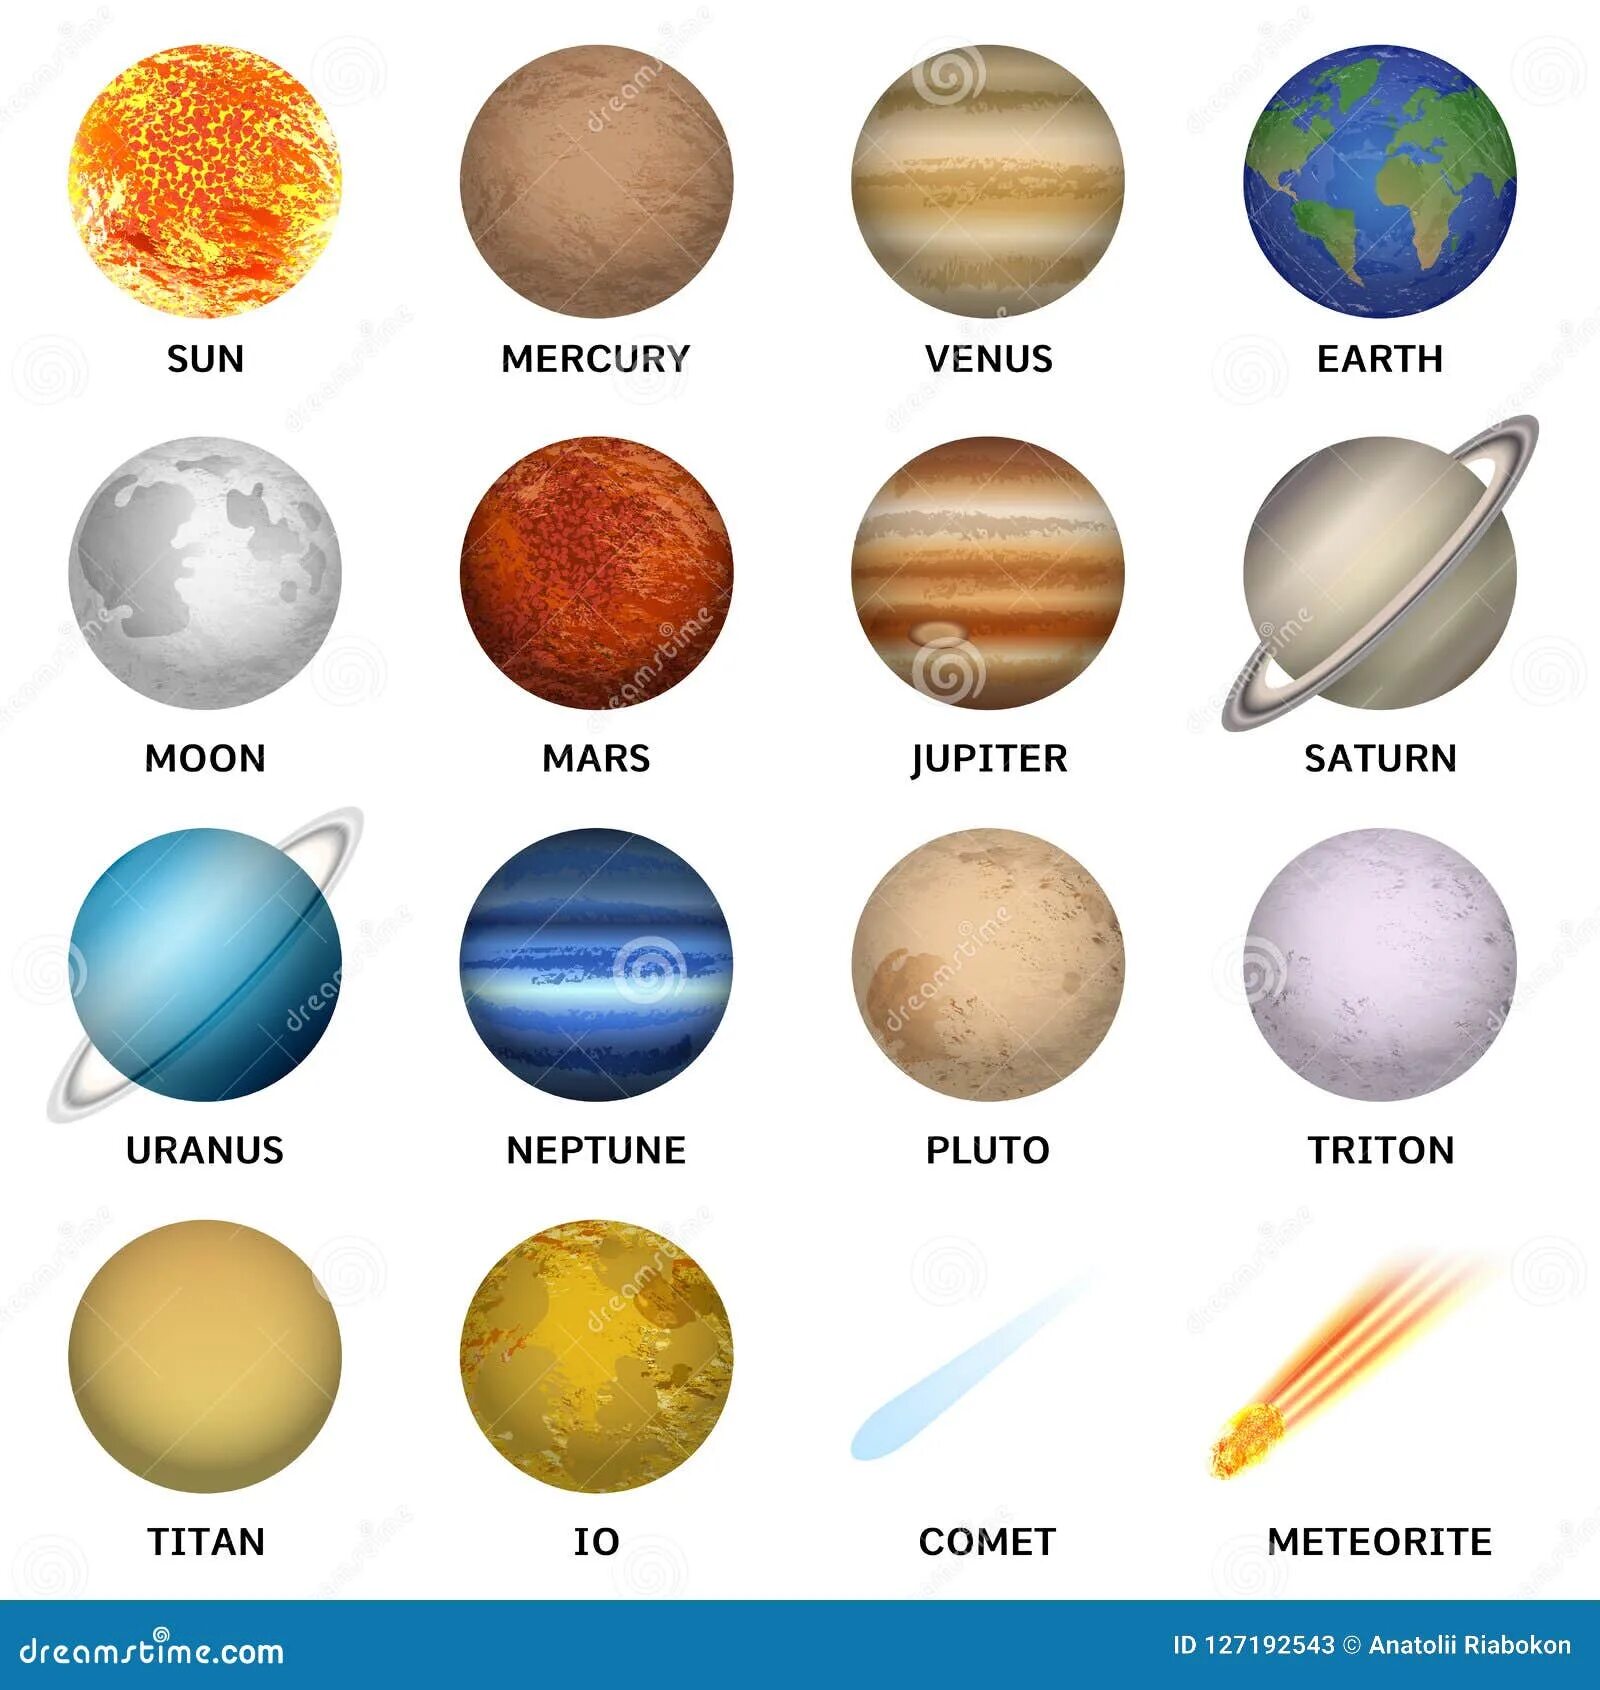 Планеты какой цвет имеет. Планеты цвета. Цвета планет солнечной системы. Планеты по цвету и названию. Цвета планет солнечной системы детям.